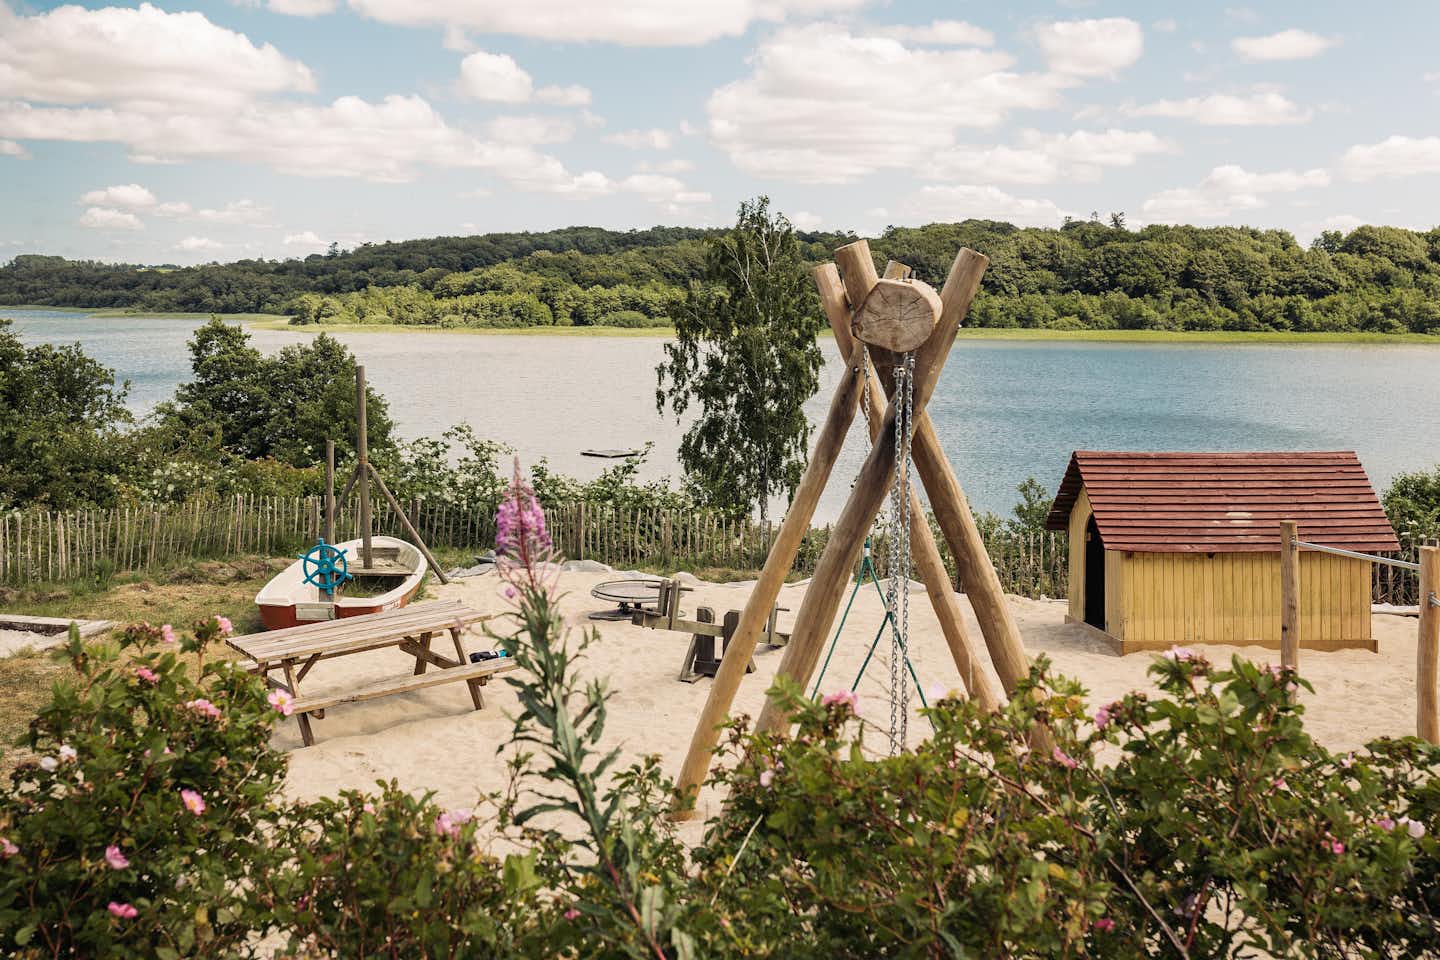 Vammen Camping - Spielplatz des Campingplatzes mit Blick auf den See